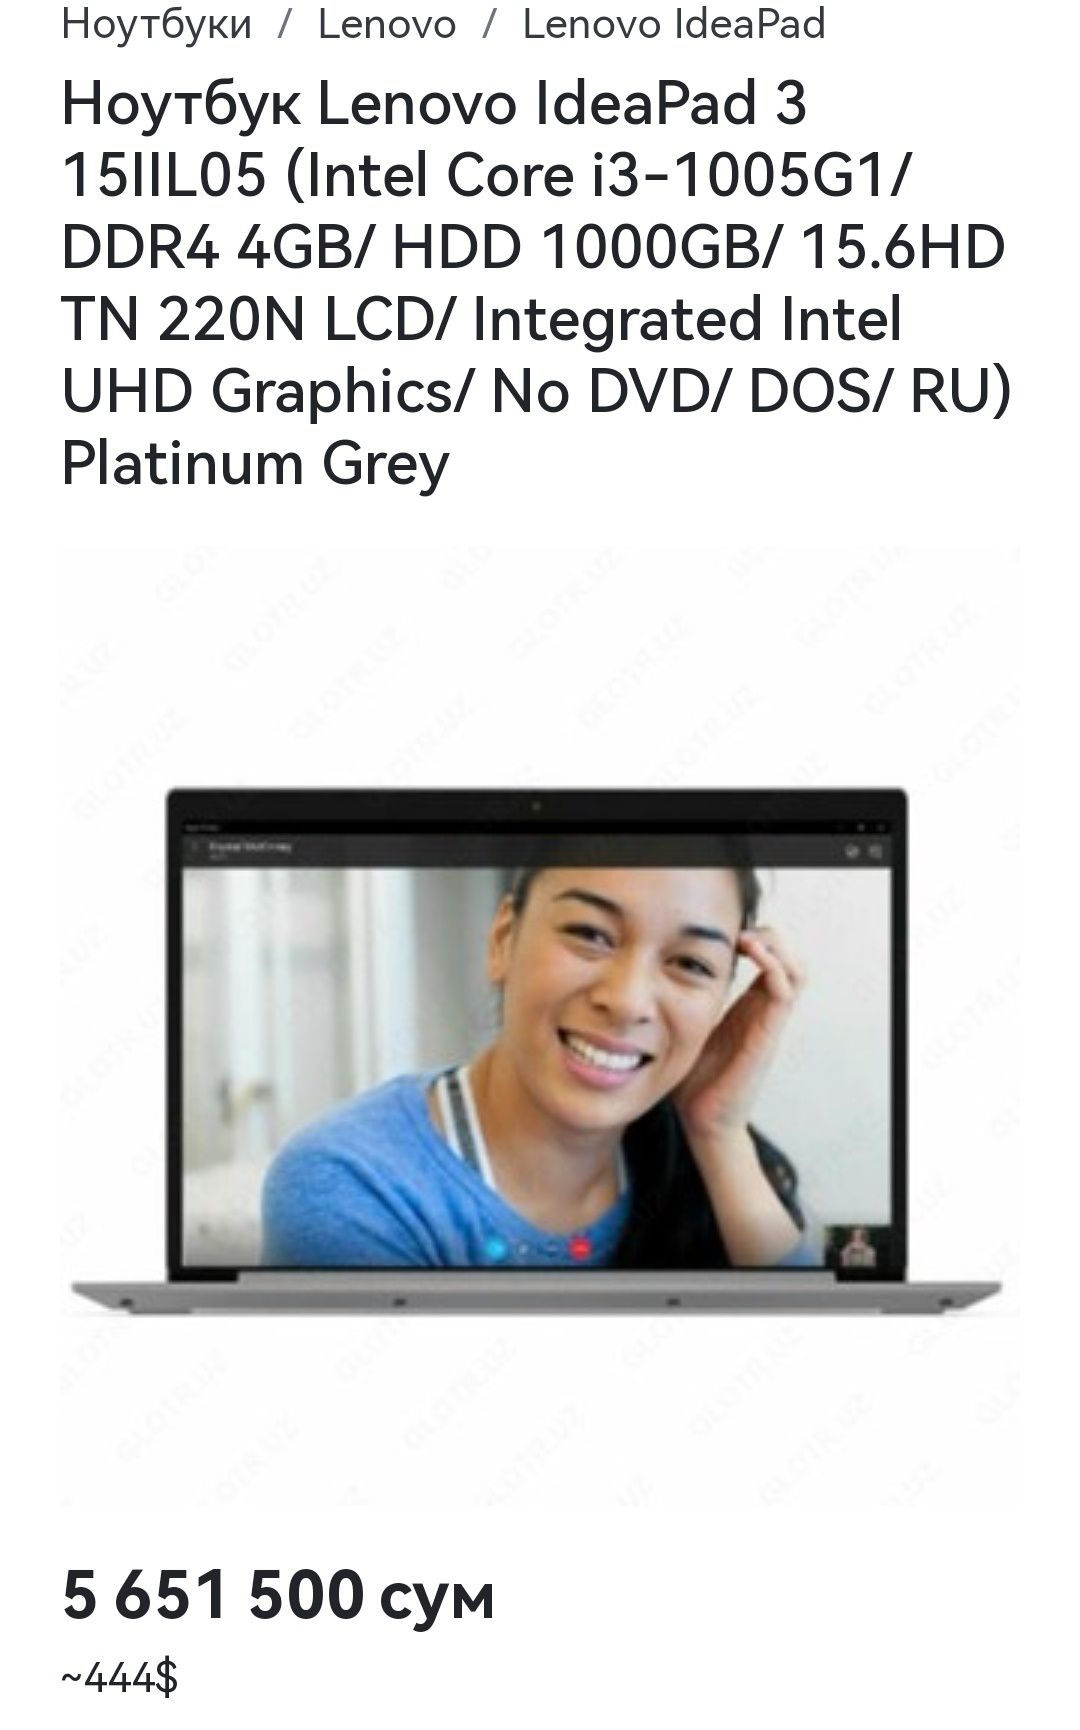 Продаю ноутбук Lenovo 500гб ssd 
Состояние новое, ноутбуком пользовалс